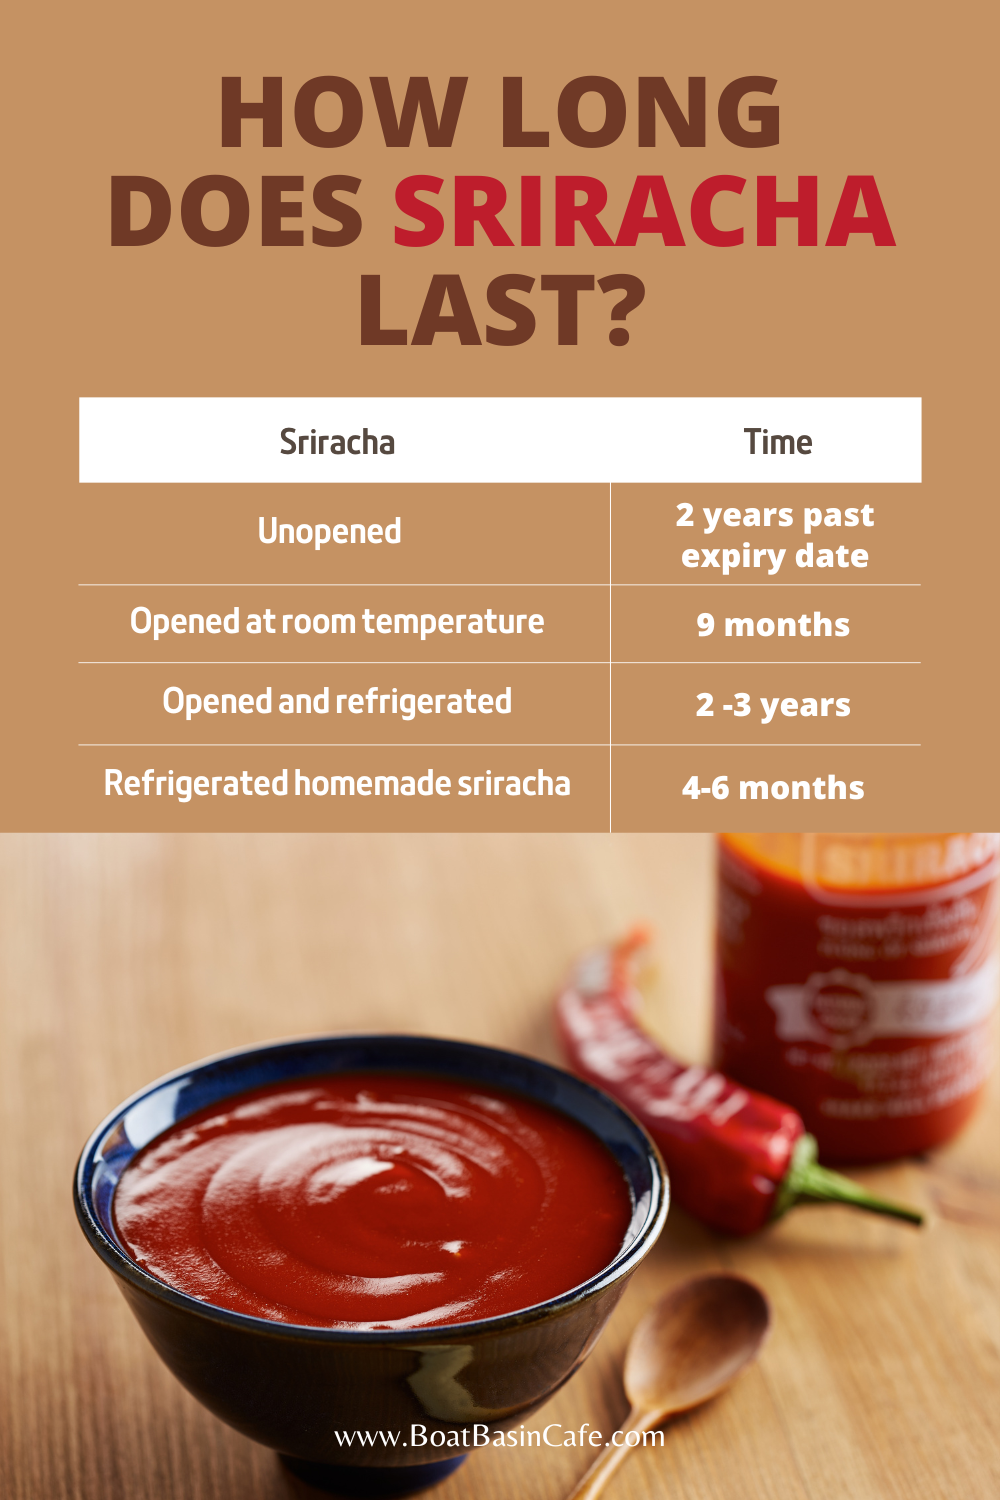 How Long Does Sriracha Last?